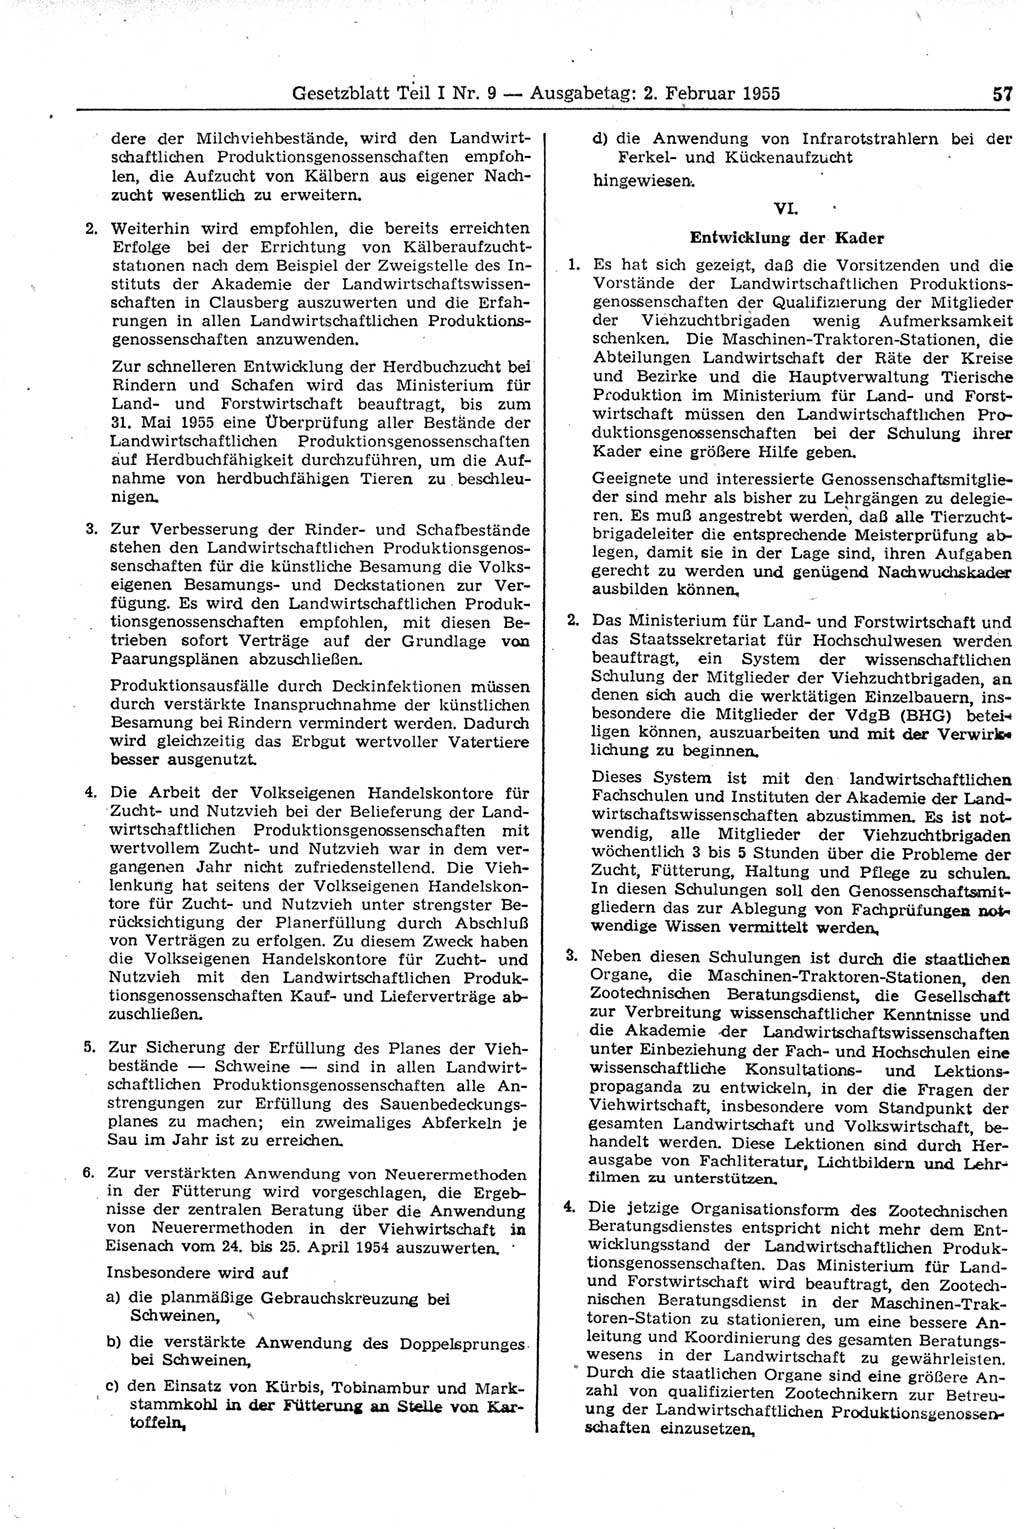 Gesetzblatt (GBl.) der Deutschen Demokratischen Republik (DDR) Teil Ⅰ 1955, Seite 57 (GBl. DDR Ⅰ 1955, S. 57)